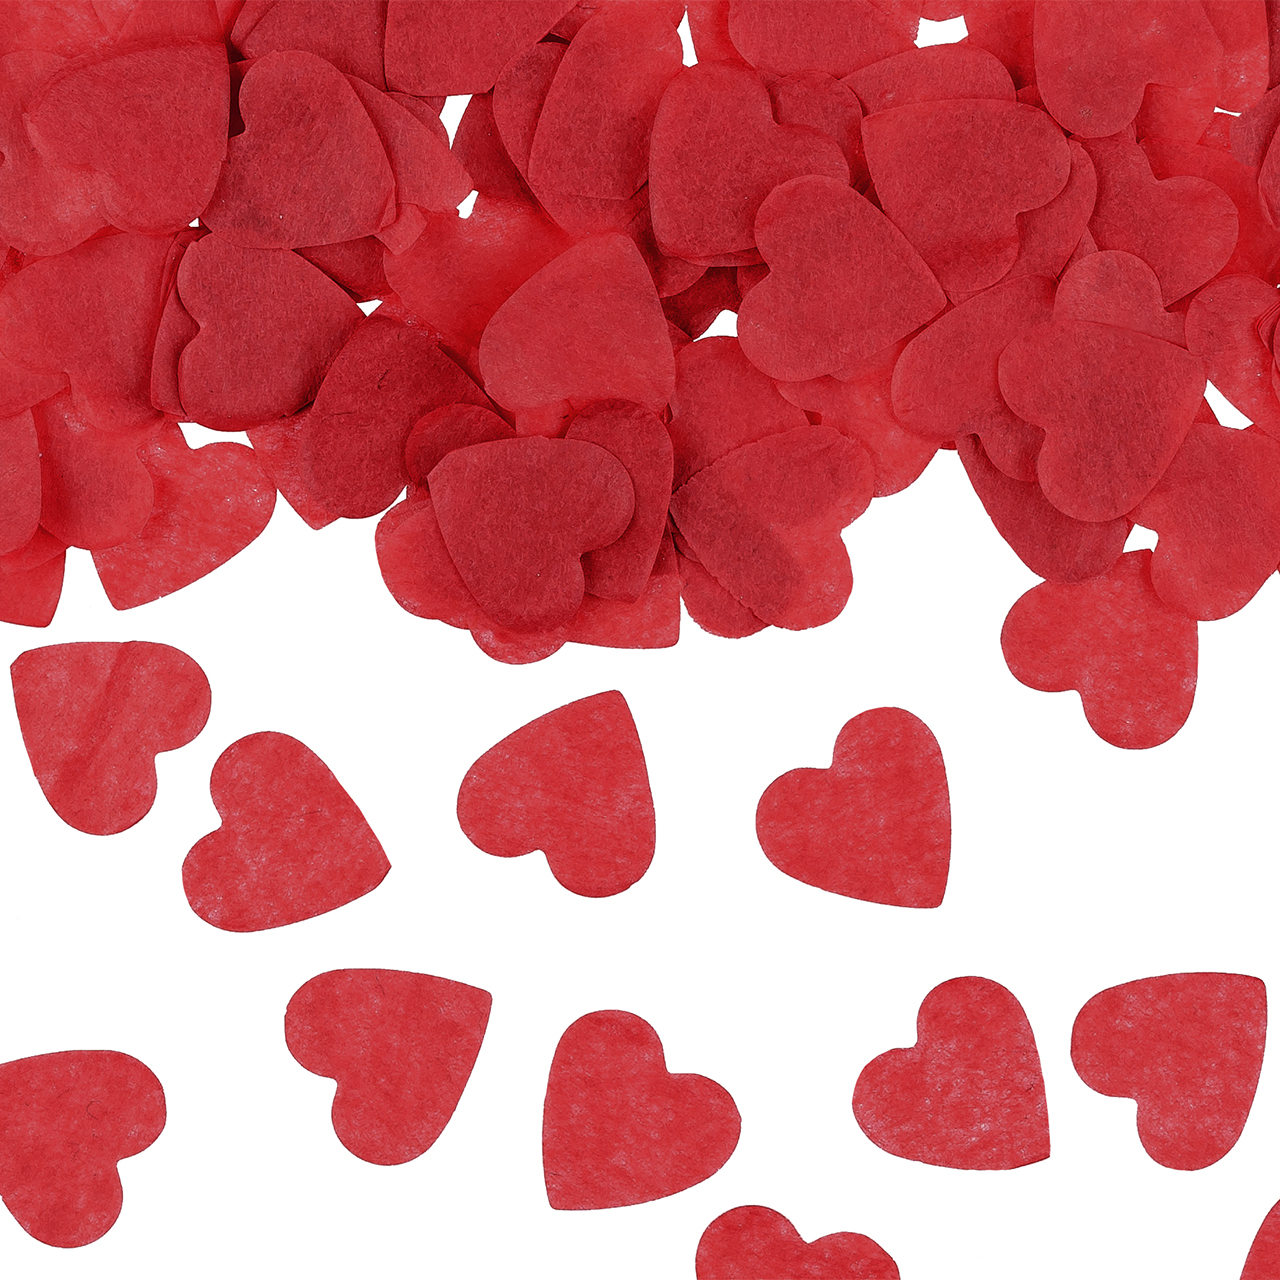 Confetti - Red Hearts